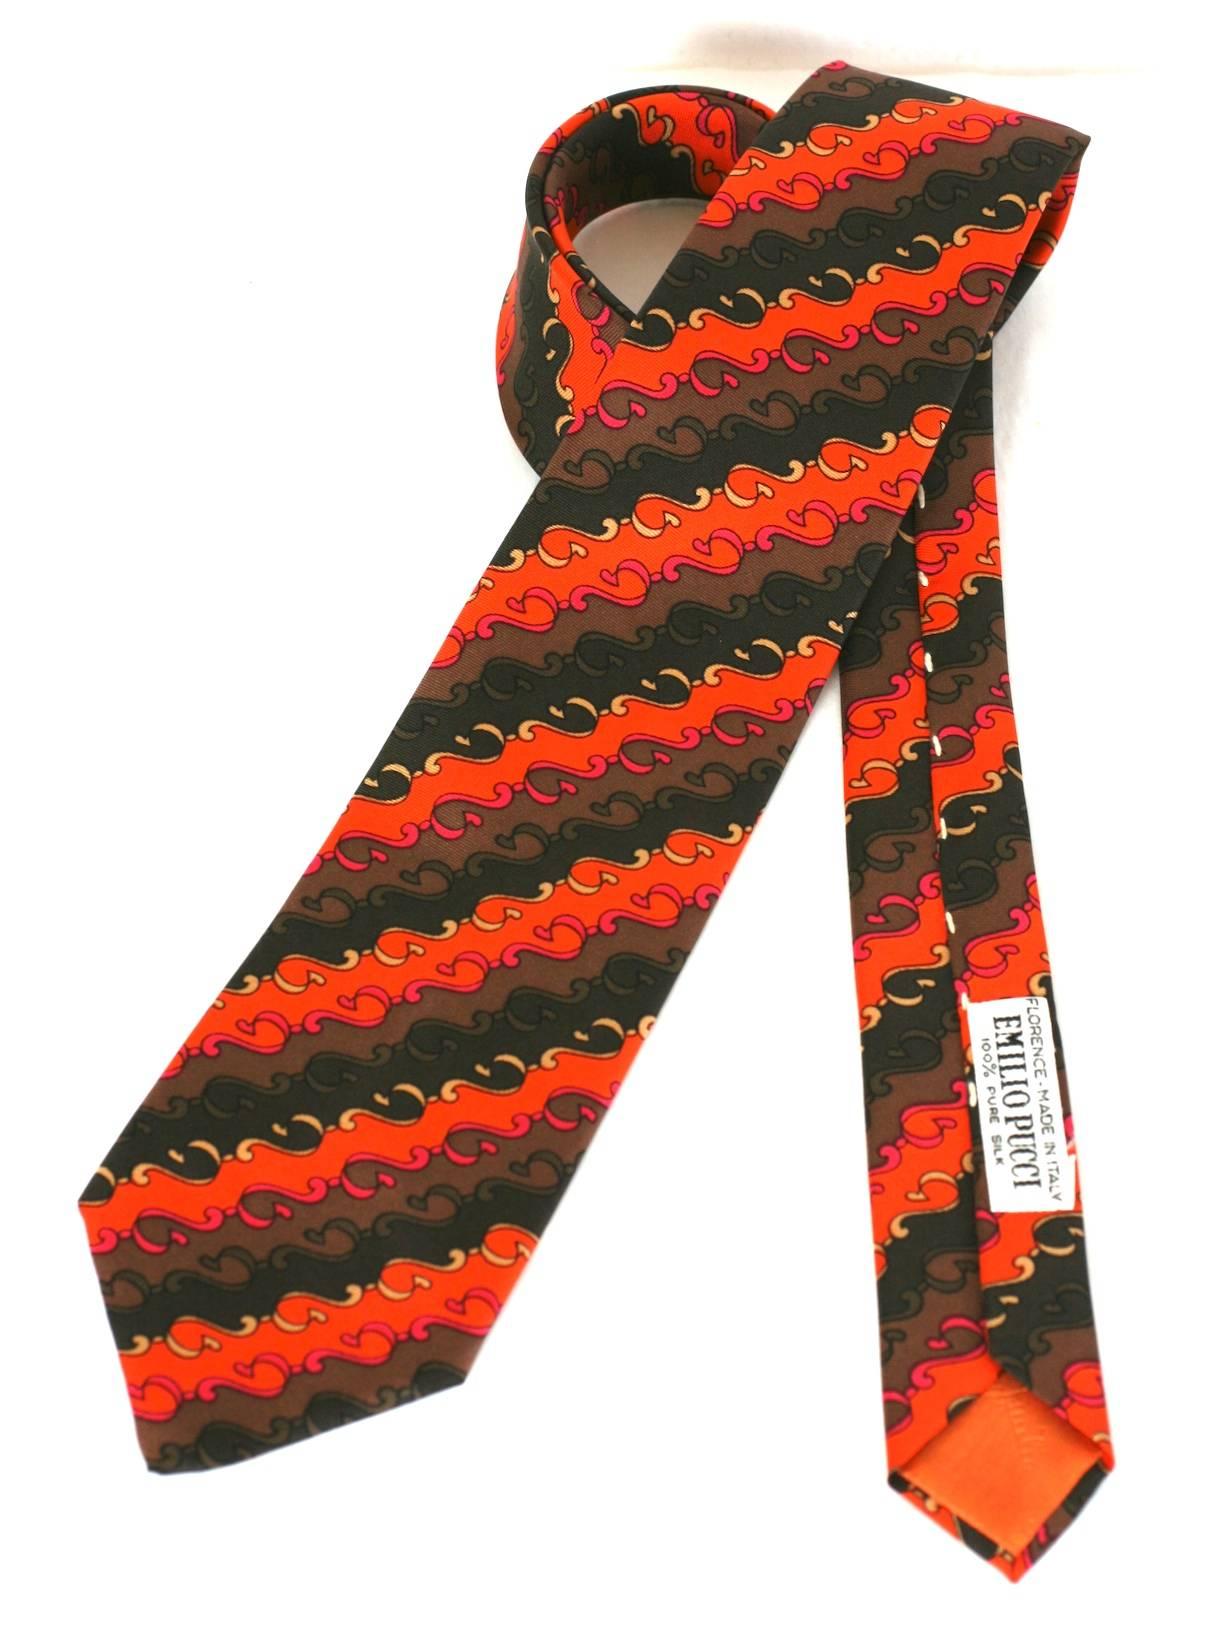 Emilio Pucci Krawatte aus Seidenköper in Orange, Braun und Fuschia mit Wirbeldruck. 1980er Jahre Italien. Ausgezeichneter Zustand.
52